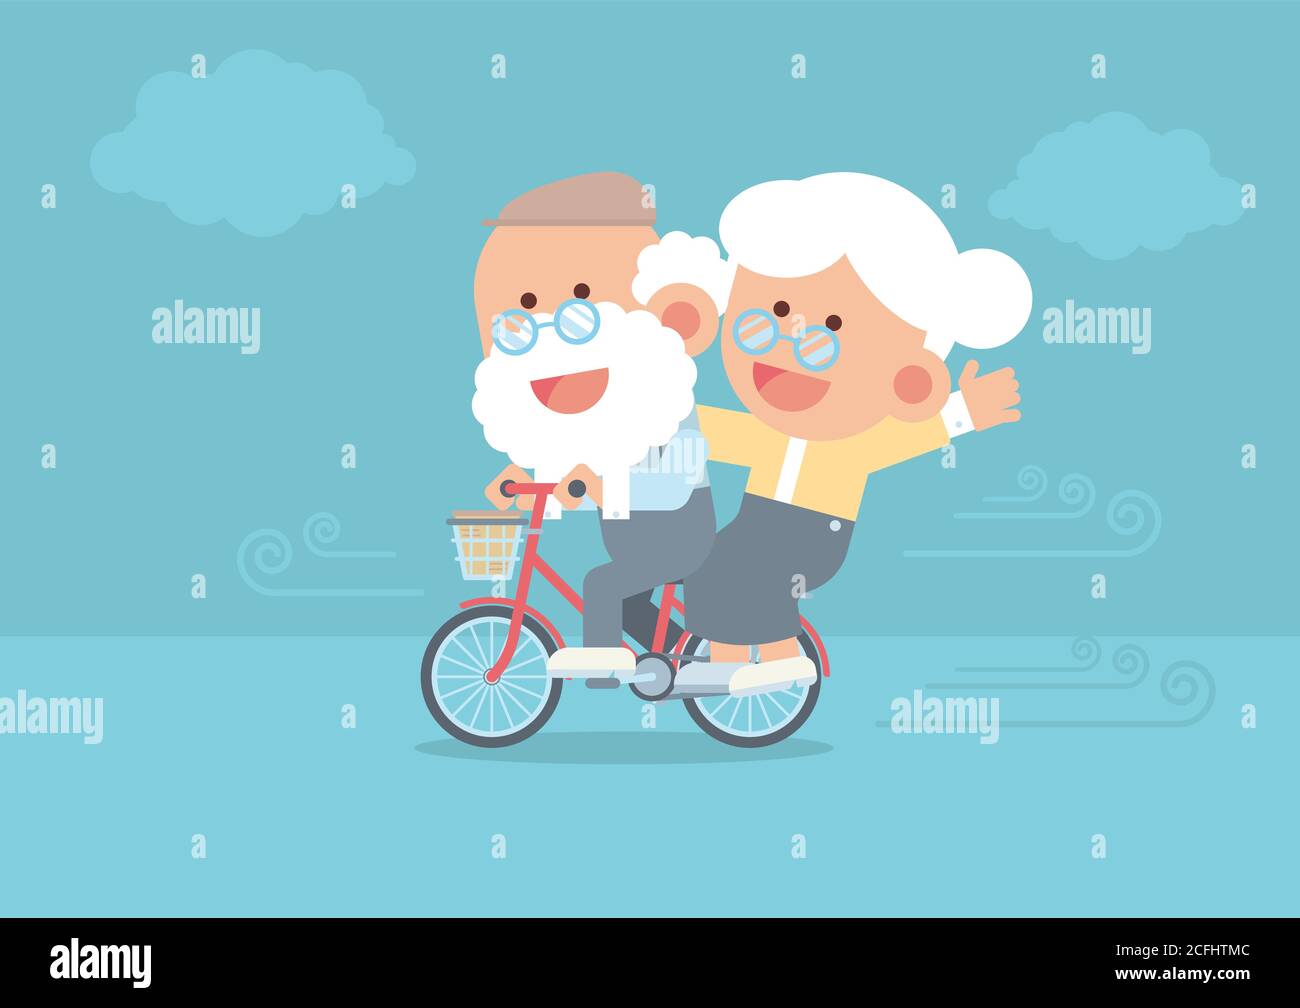 Couple âgé souriant, homme senior à vélo vintage en plein air avec femme senior assise derrière, vent soufflant et nuages dans un joli modèle de dessin animé plat Illustration de Vecteur